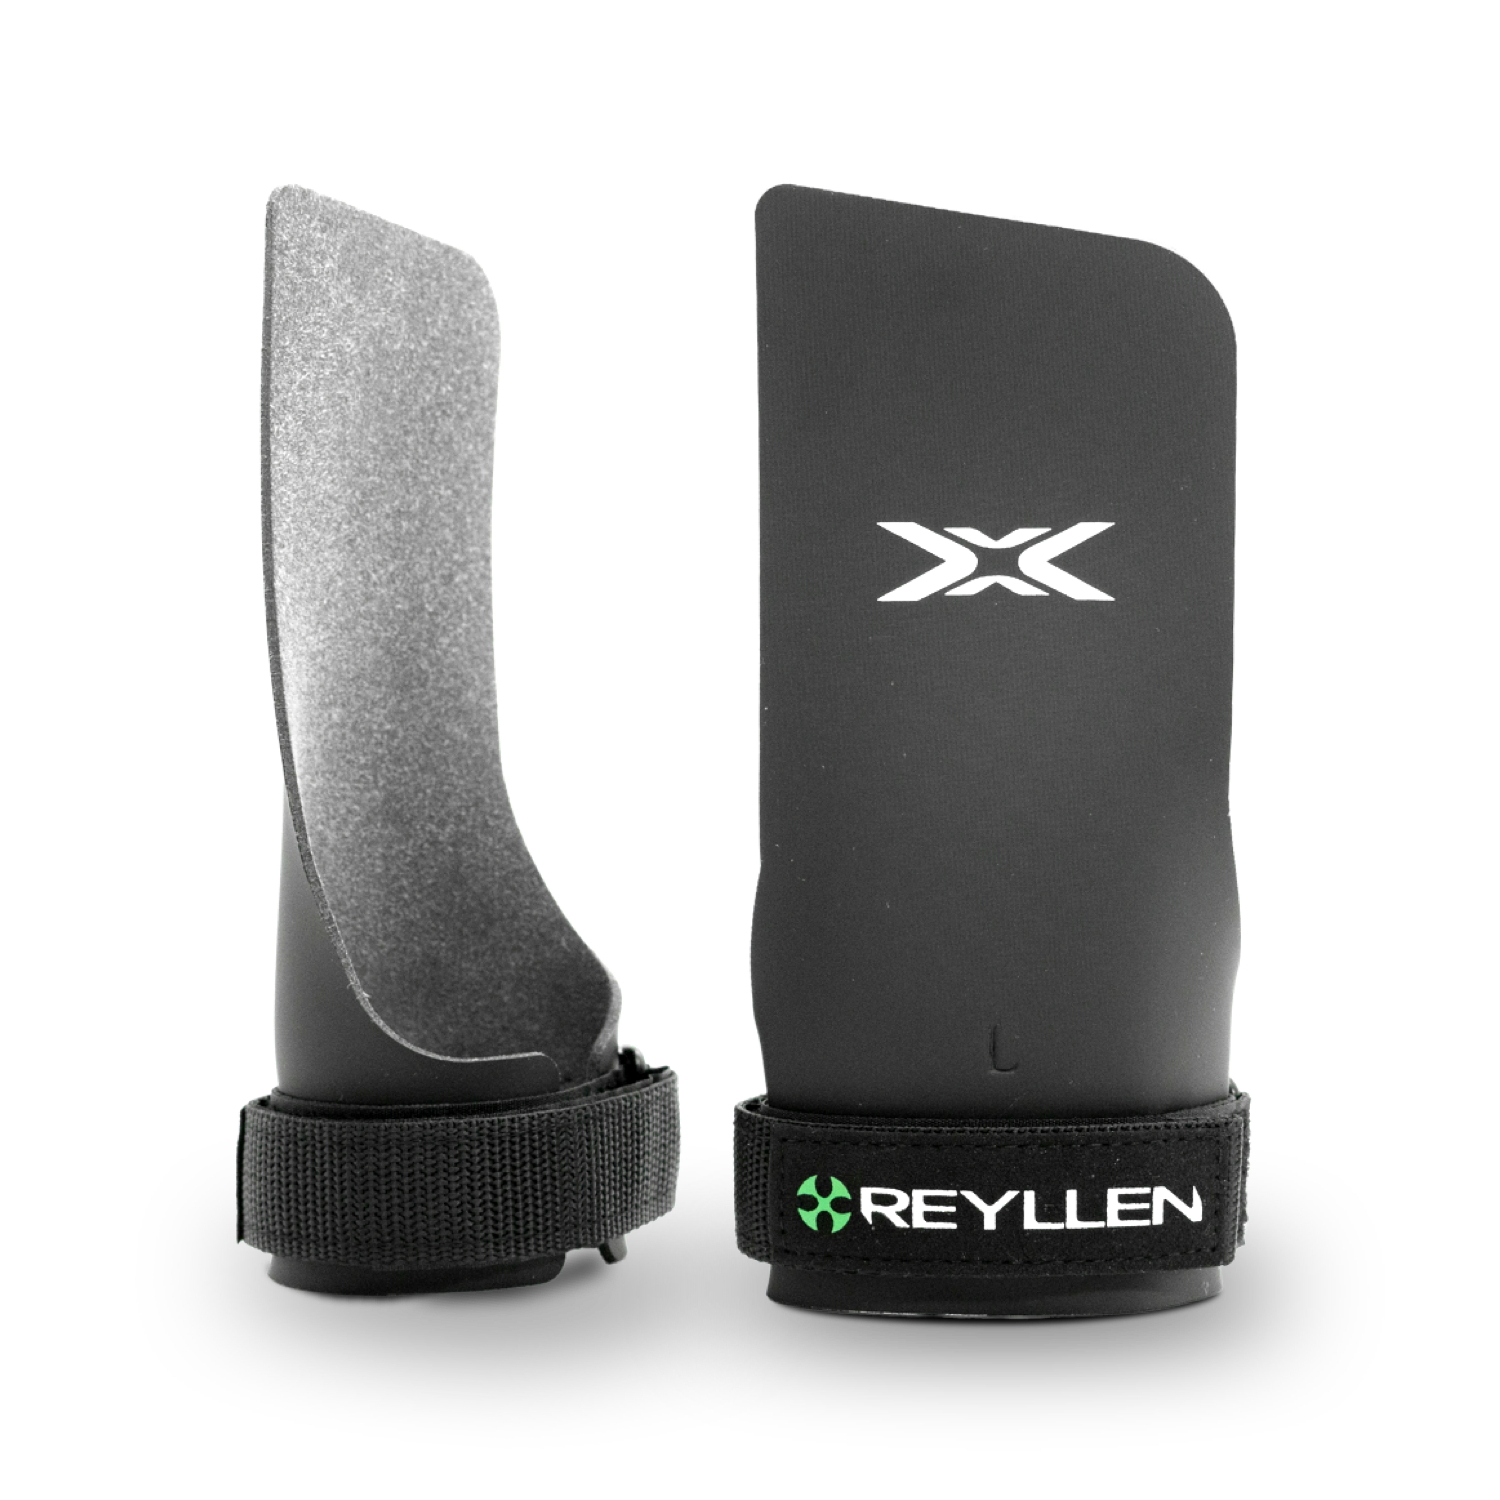 Reyllen Merlin X4 CrossFit Gymnastic Hand Grips - Rubber Fingerless - feature png image